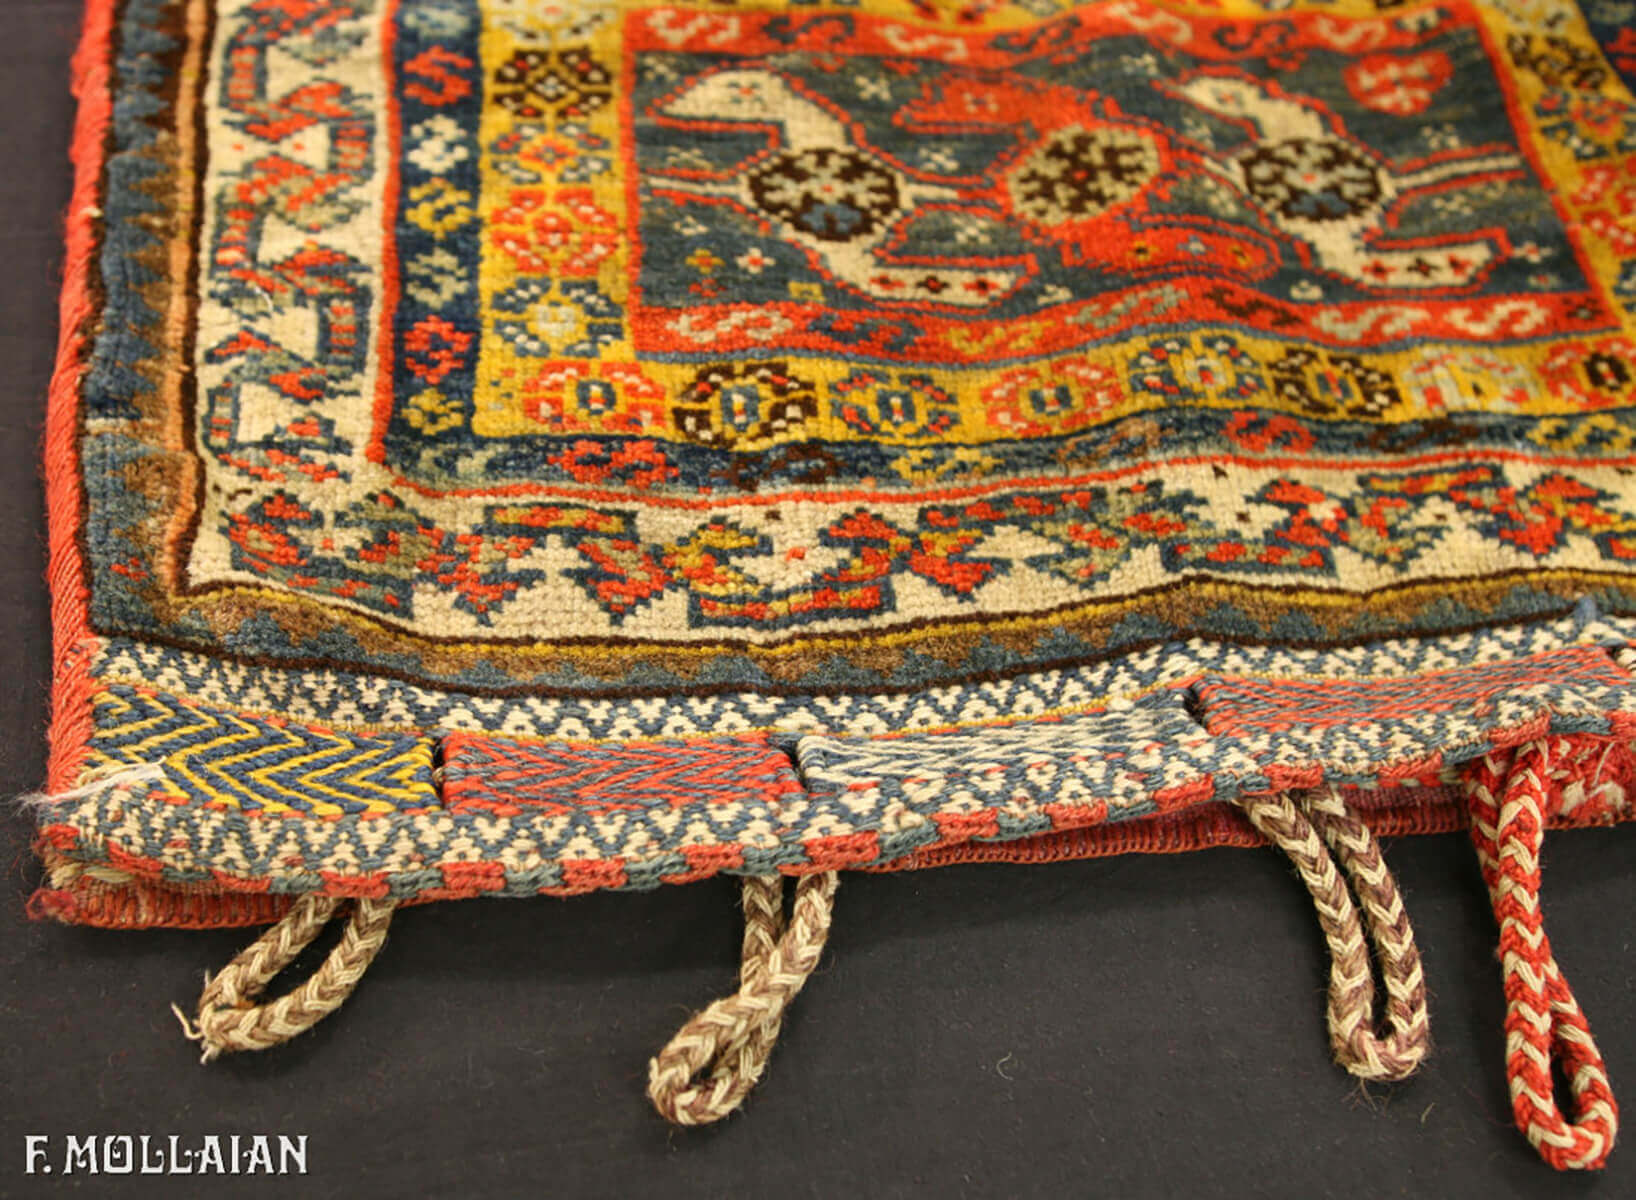 Teppich Persischer Antiker Kashkuli n°:19307700